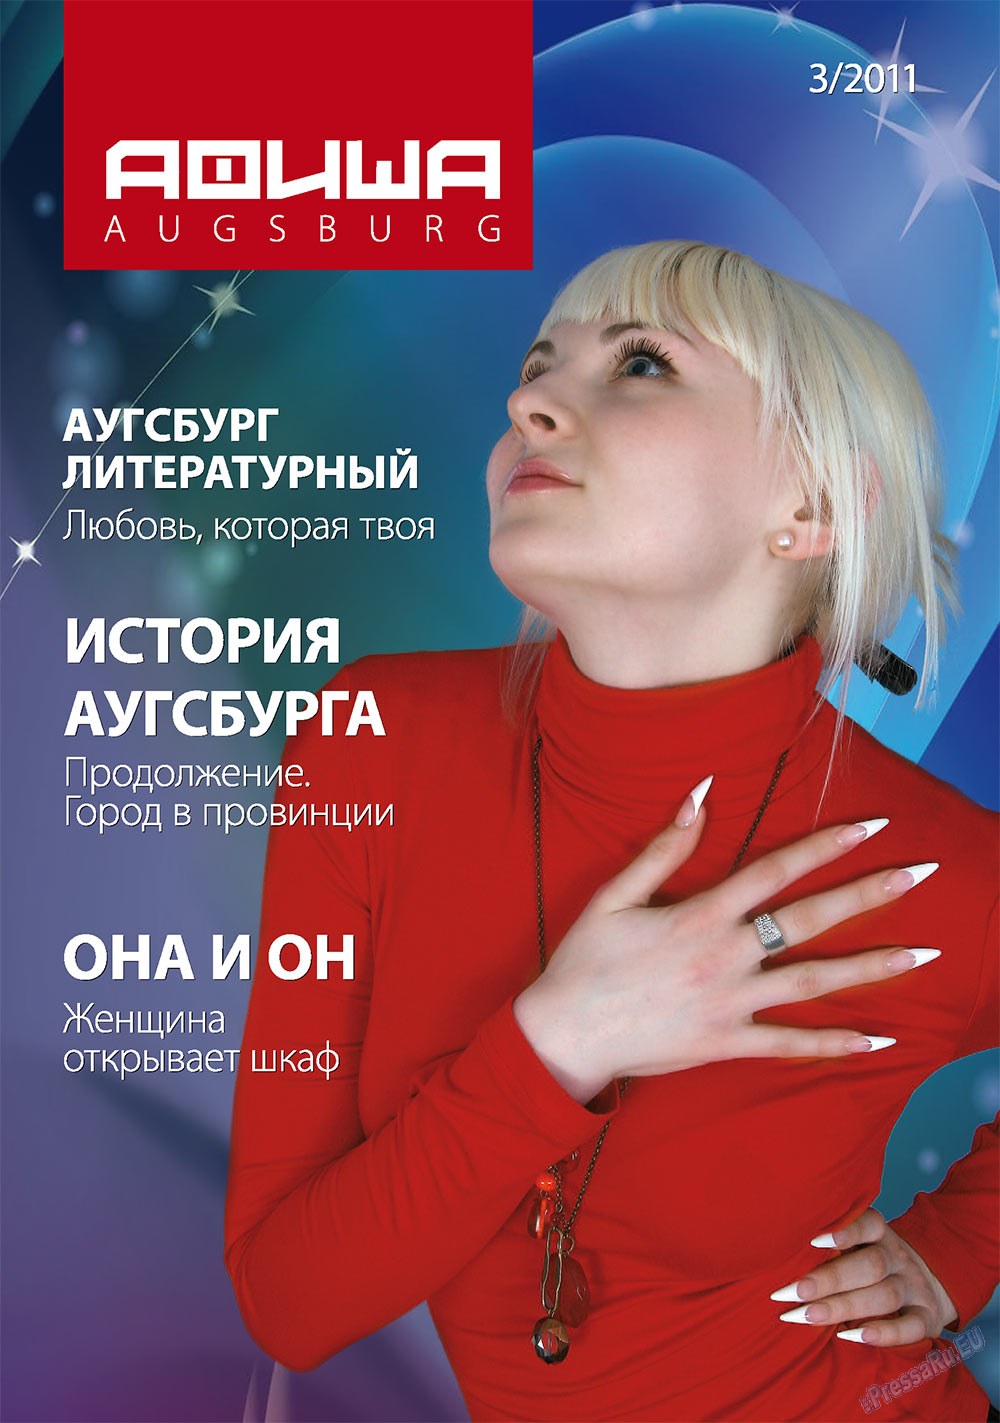 Афиша Augsburg (журнал). 2011 год, номер 3, стр. 1